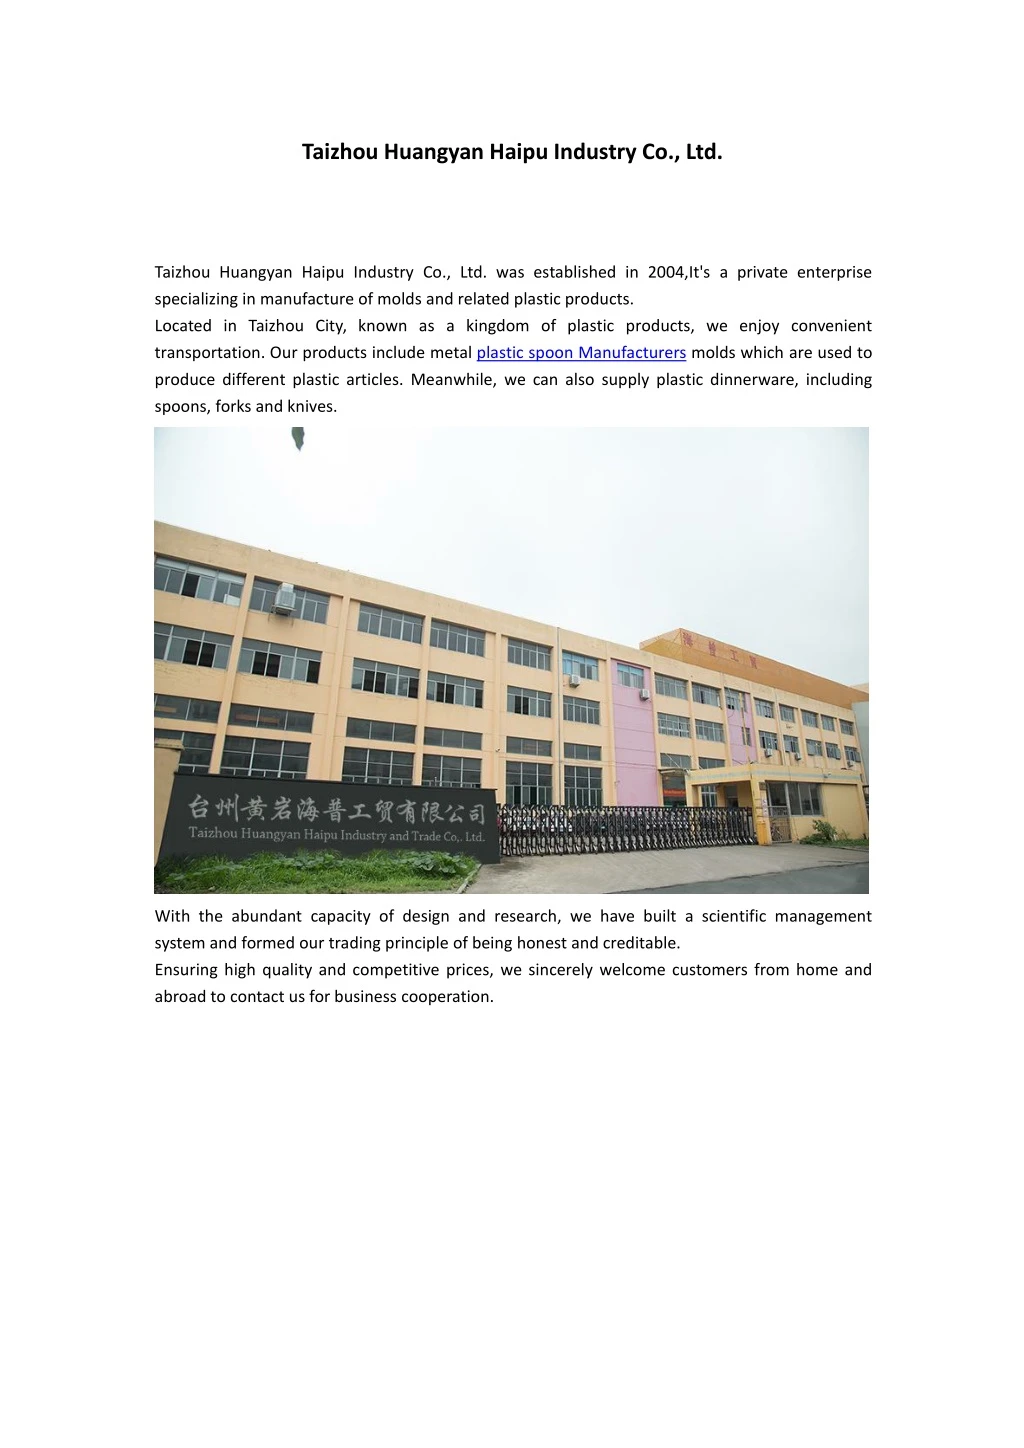 taizhou huangyan haipu industry co ltd